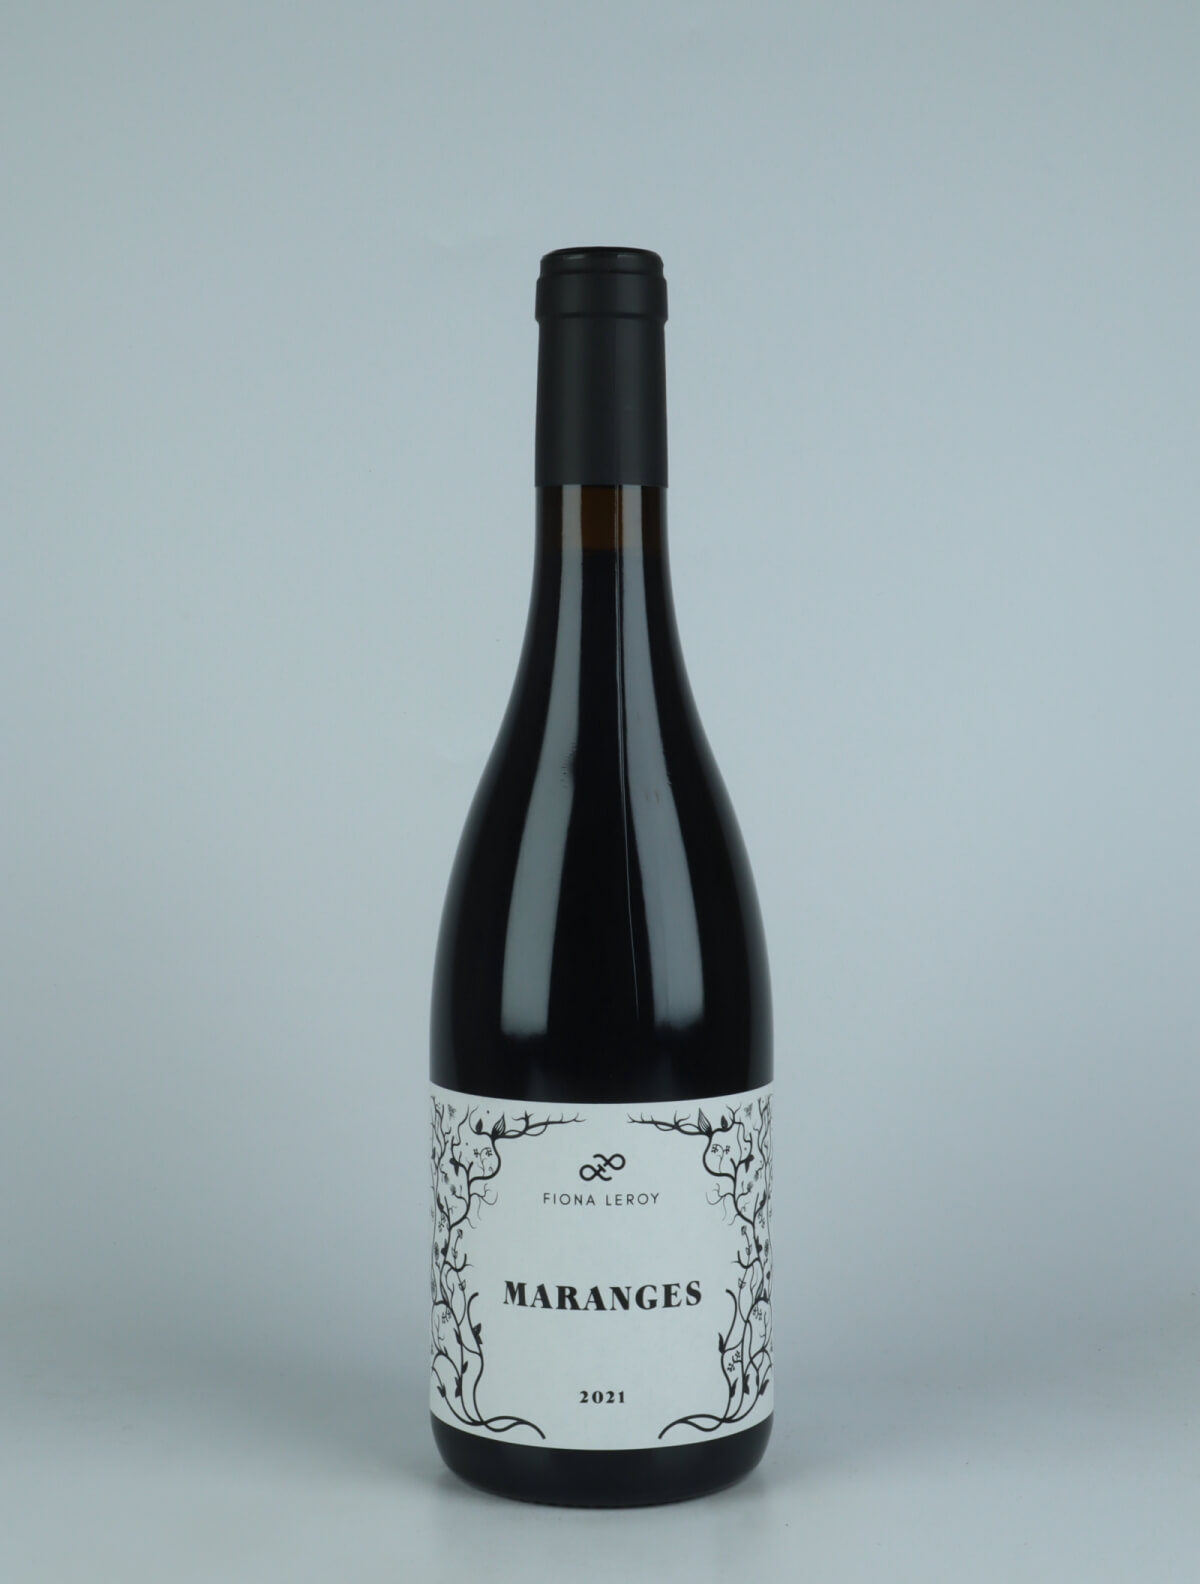 En flaske 2021 Maranges Rouge Rødvin fra Fiona Leroy, Bourgogne i Frankrig